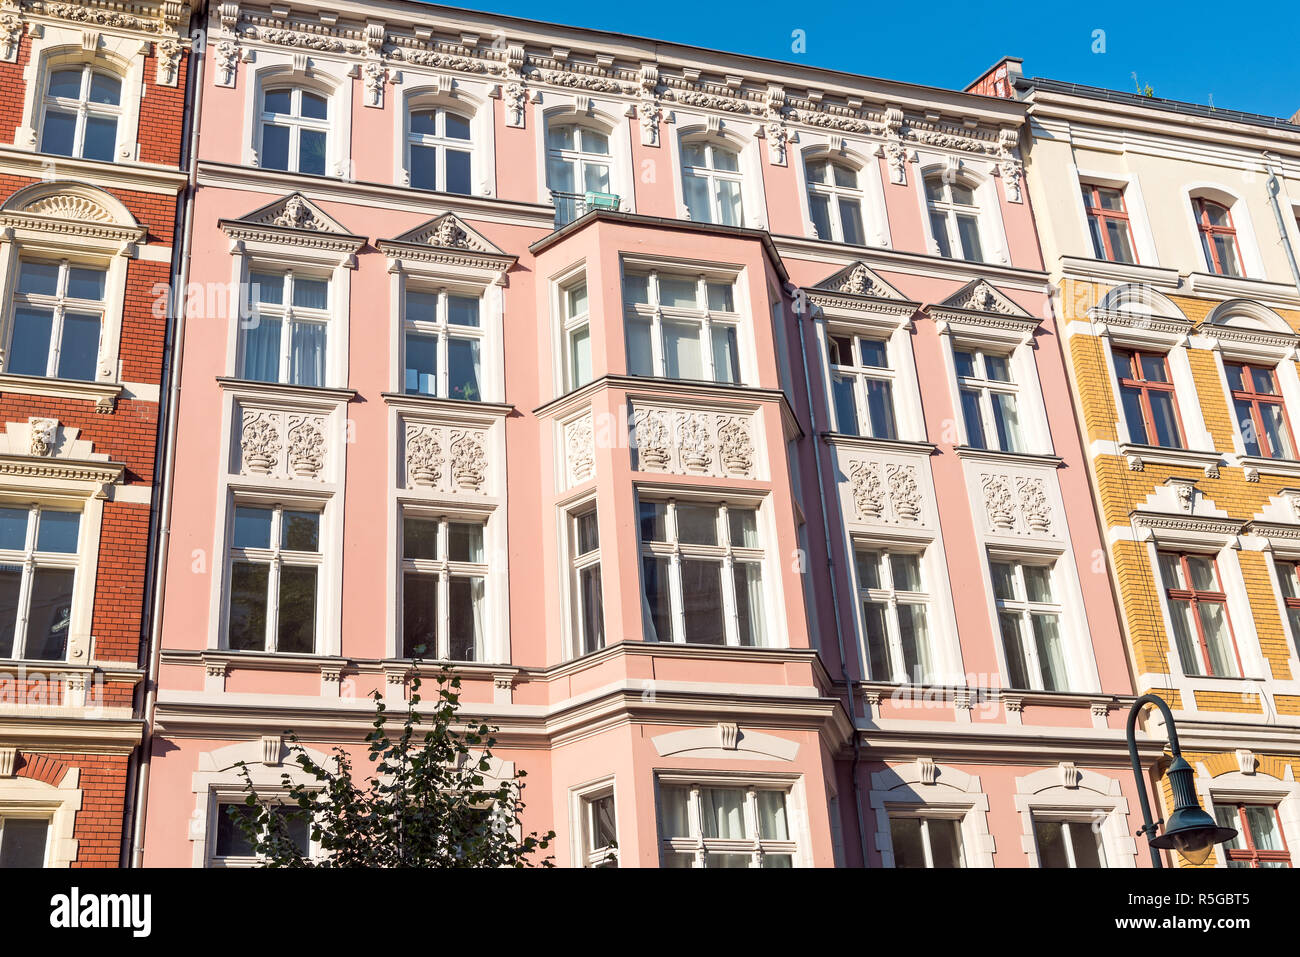 lovingly renovated old buildings in prenzlauer berg in berlin Stock Photo